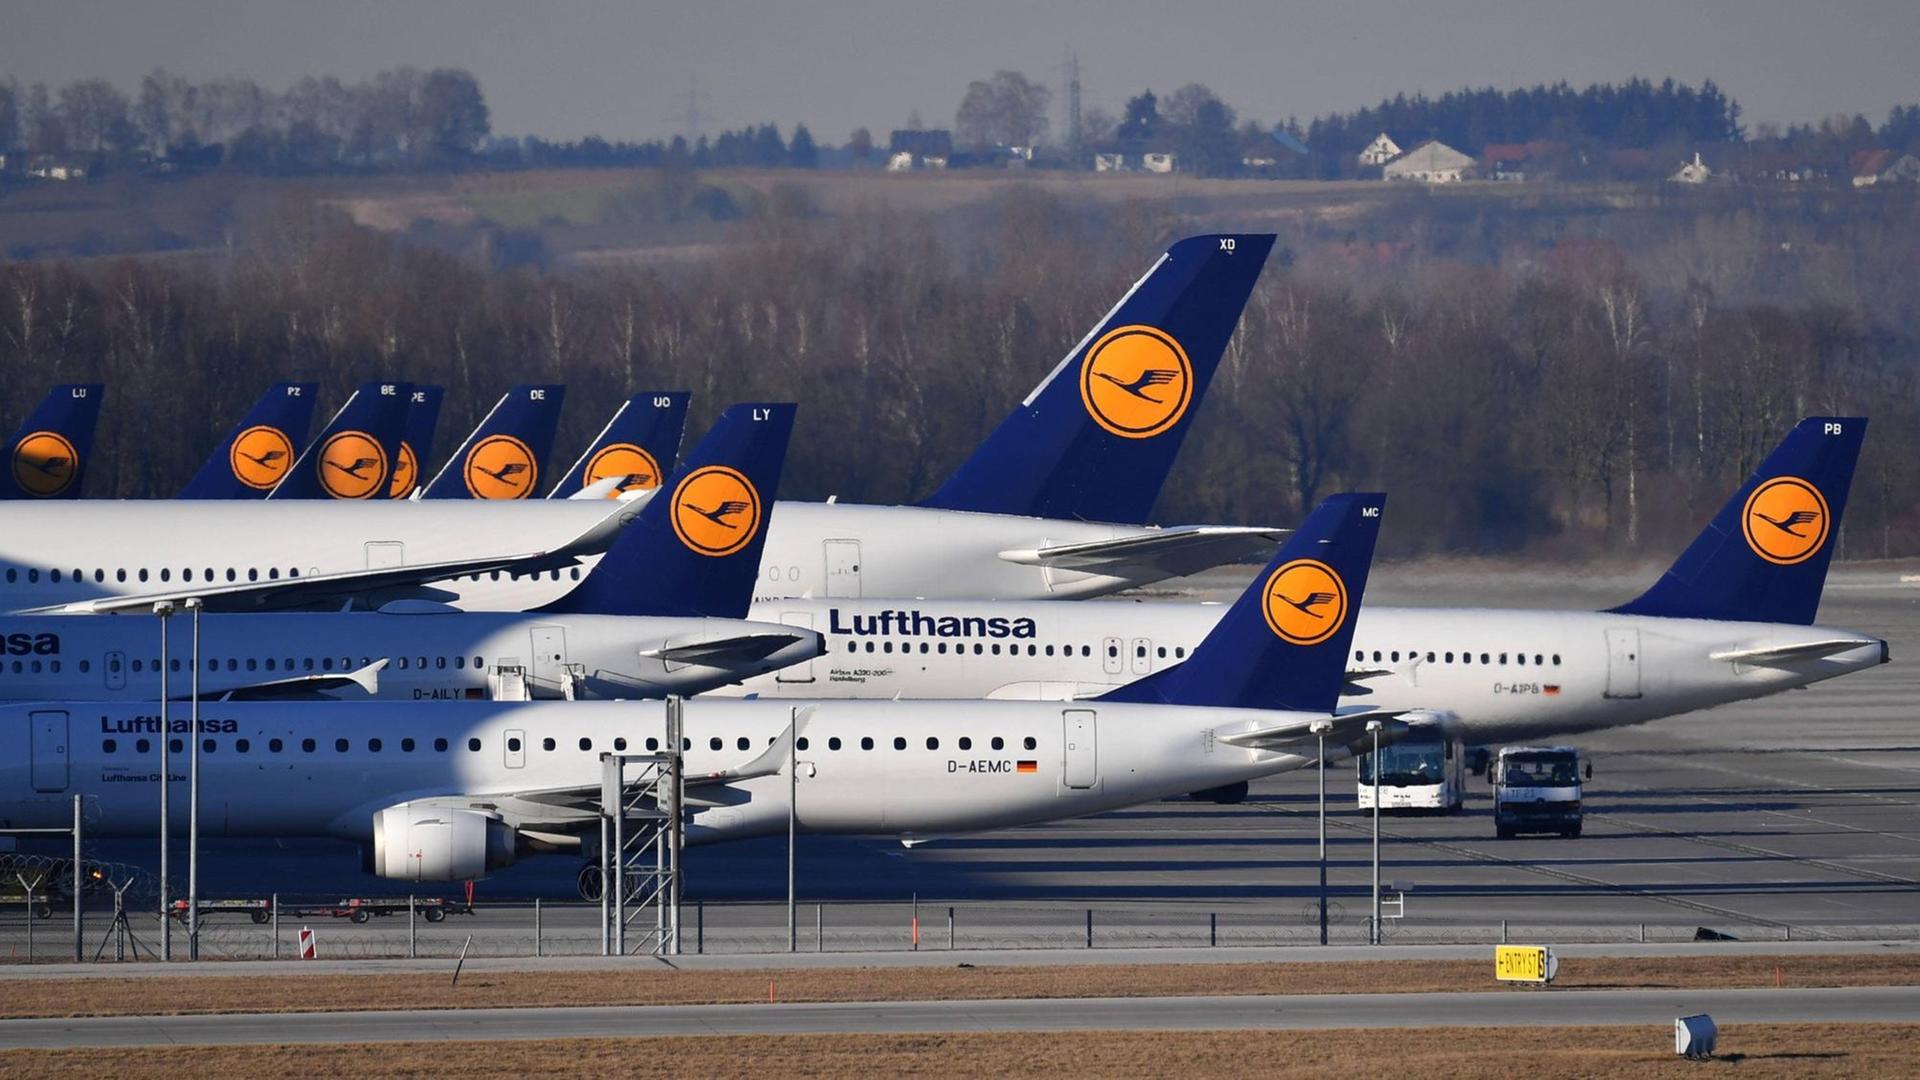 Flugzeuge mit dem blaugelben Logo der Lufthansa stehen dicht gedrängt hintereinander. Im Hintergrund eine dörfliche Landschaft.